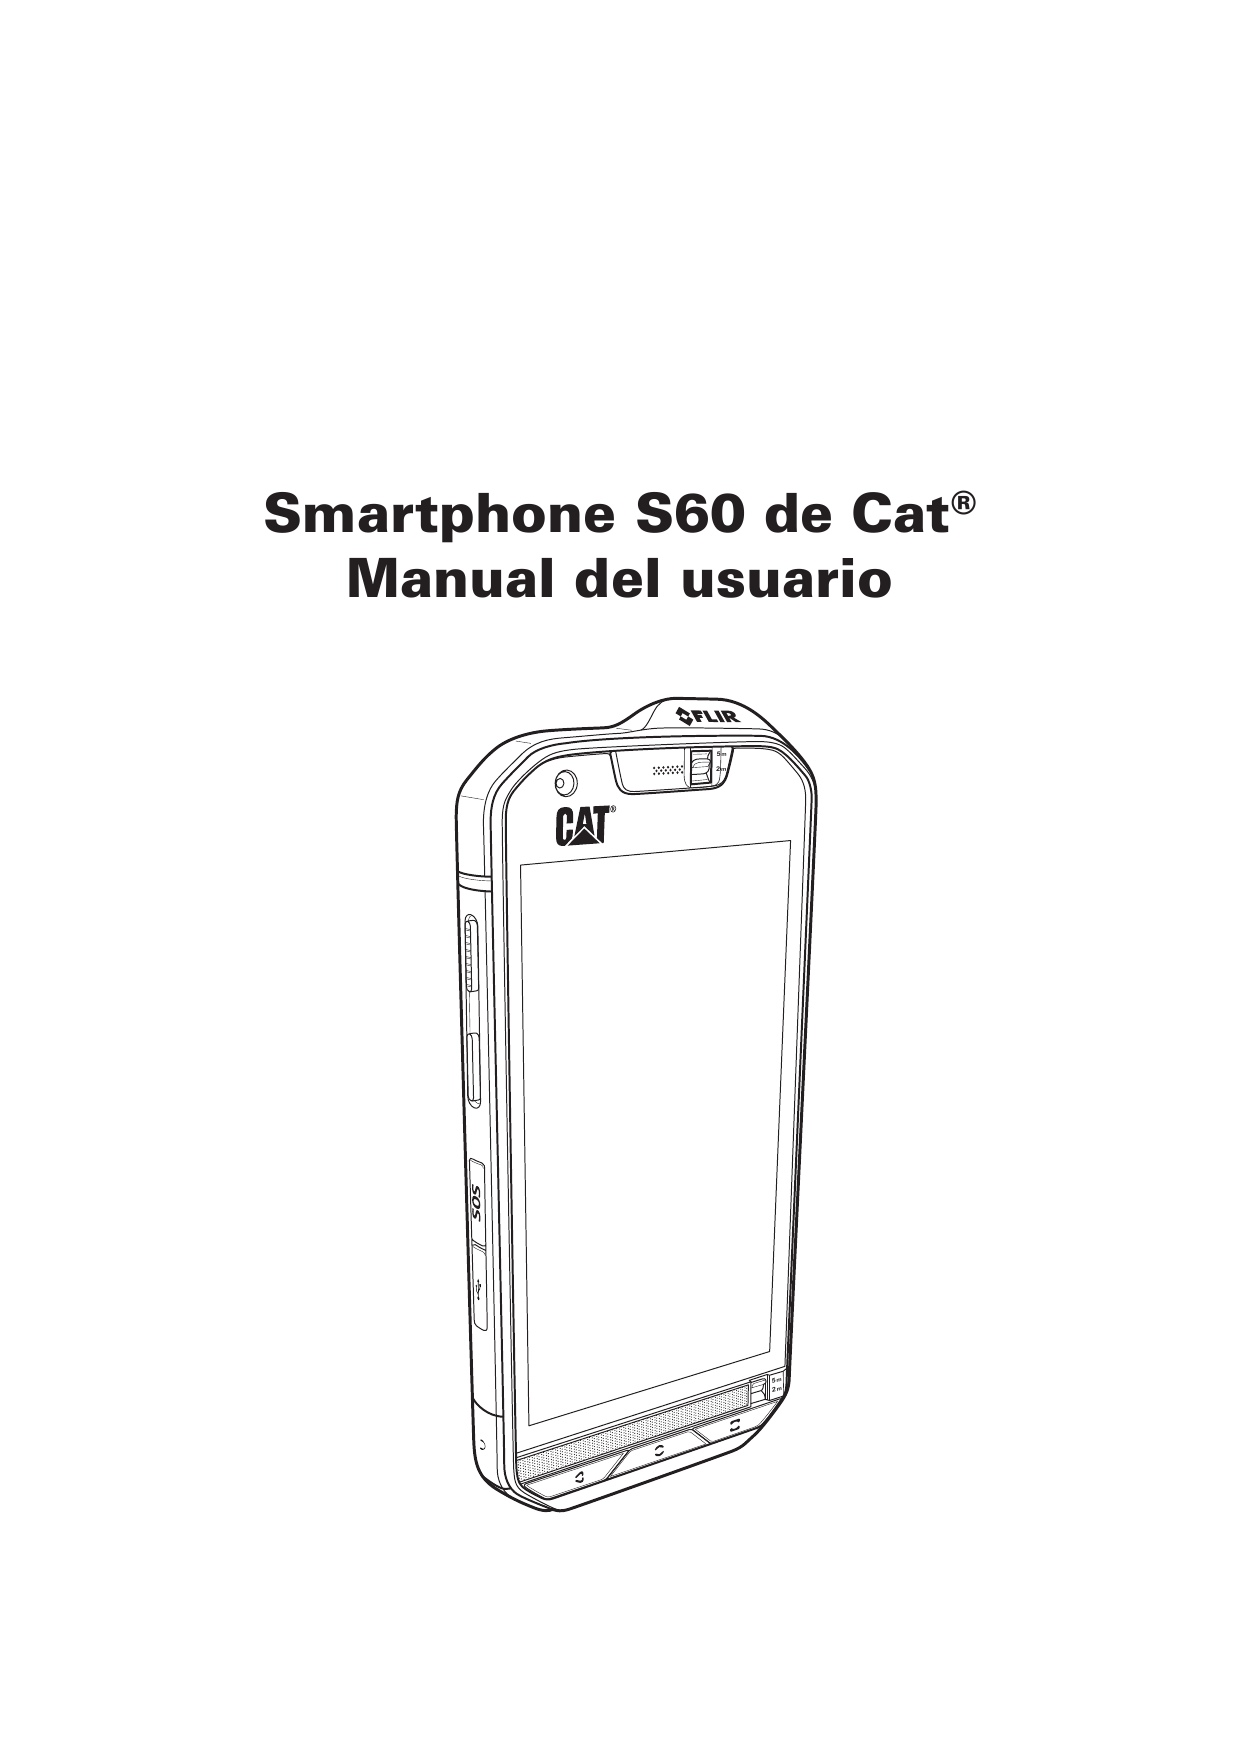 Smartphone S60 de Cat®Manual del usuario5m2m5m2m